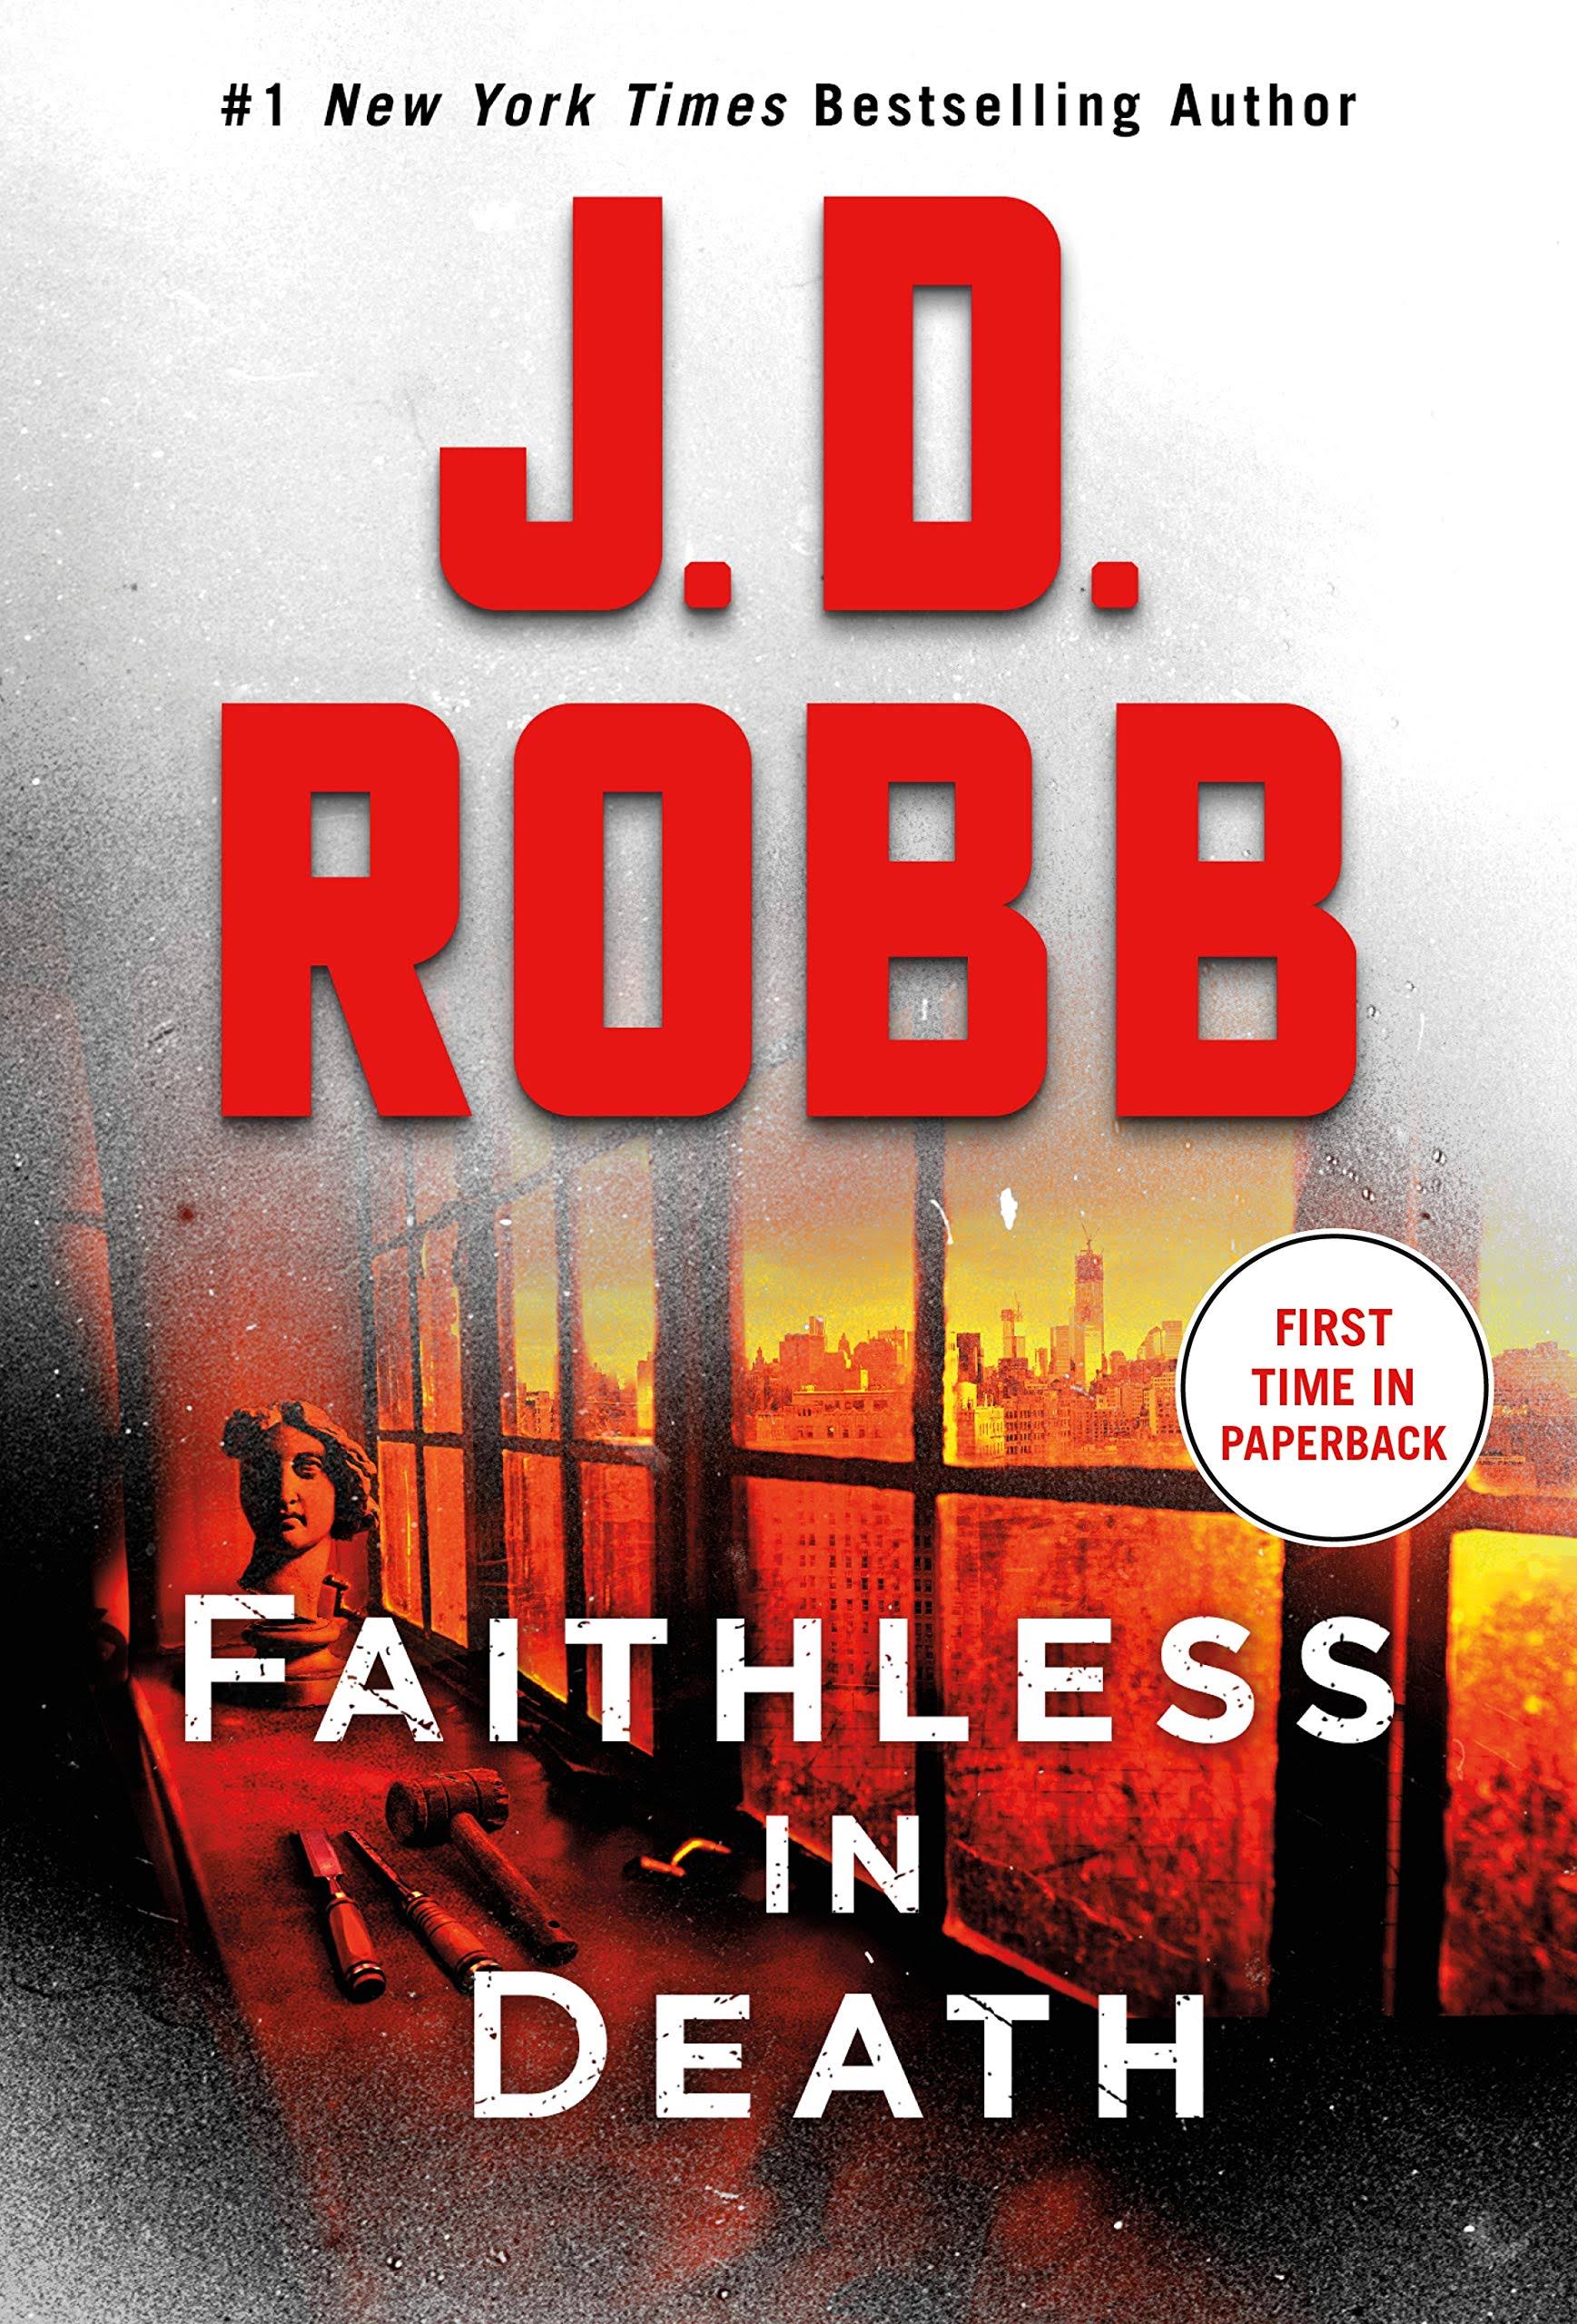 Faithless in Death: An Eve Dallas Novel